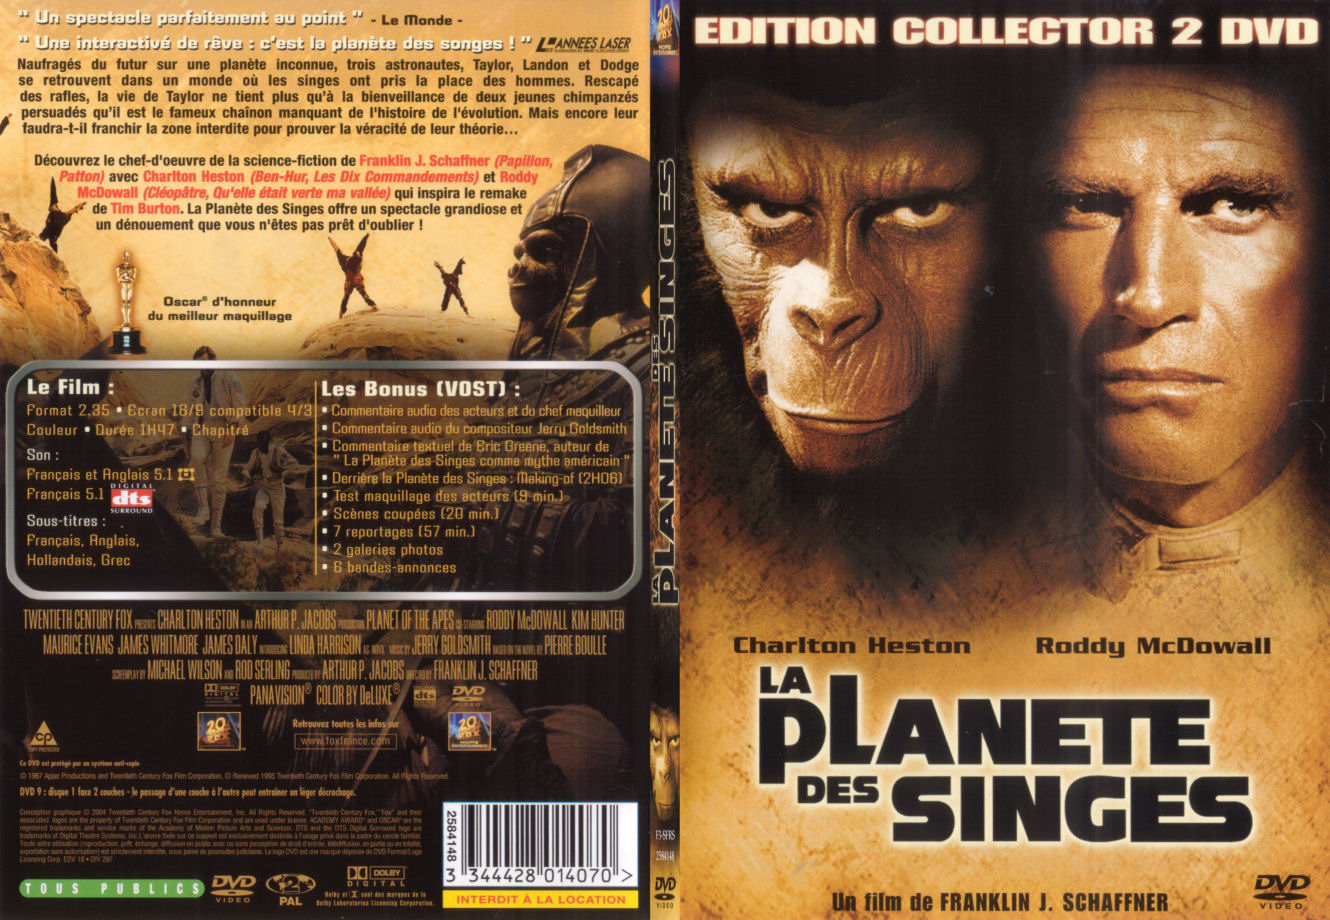 Jaquette DVD La plante des singes 1967 - SLIM